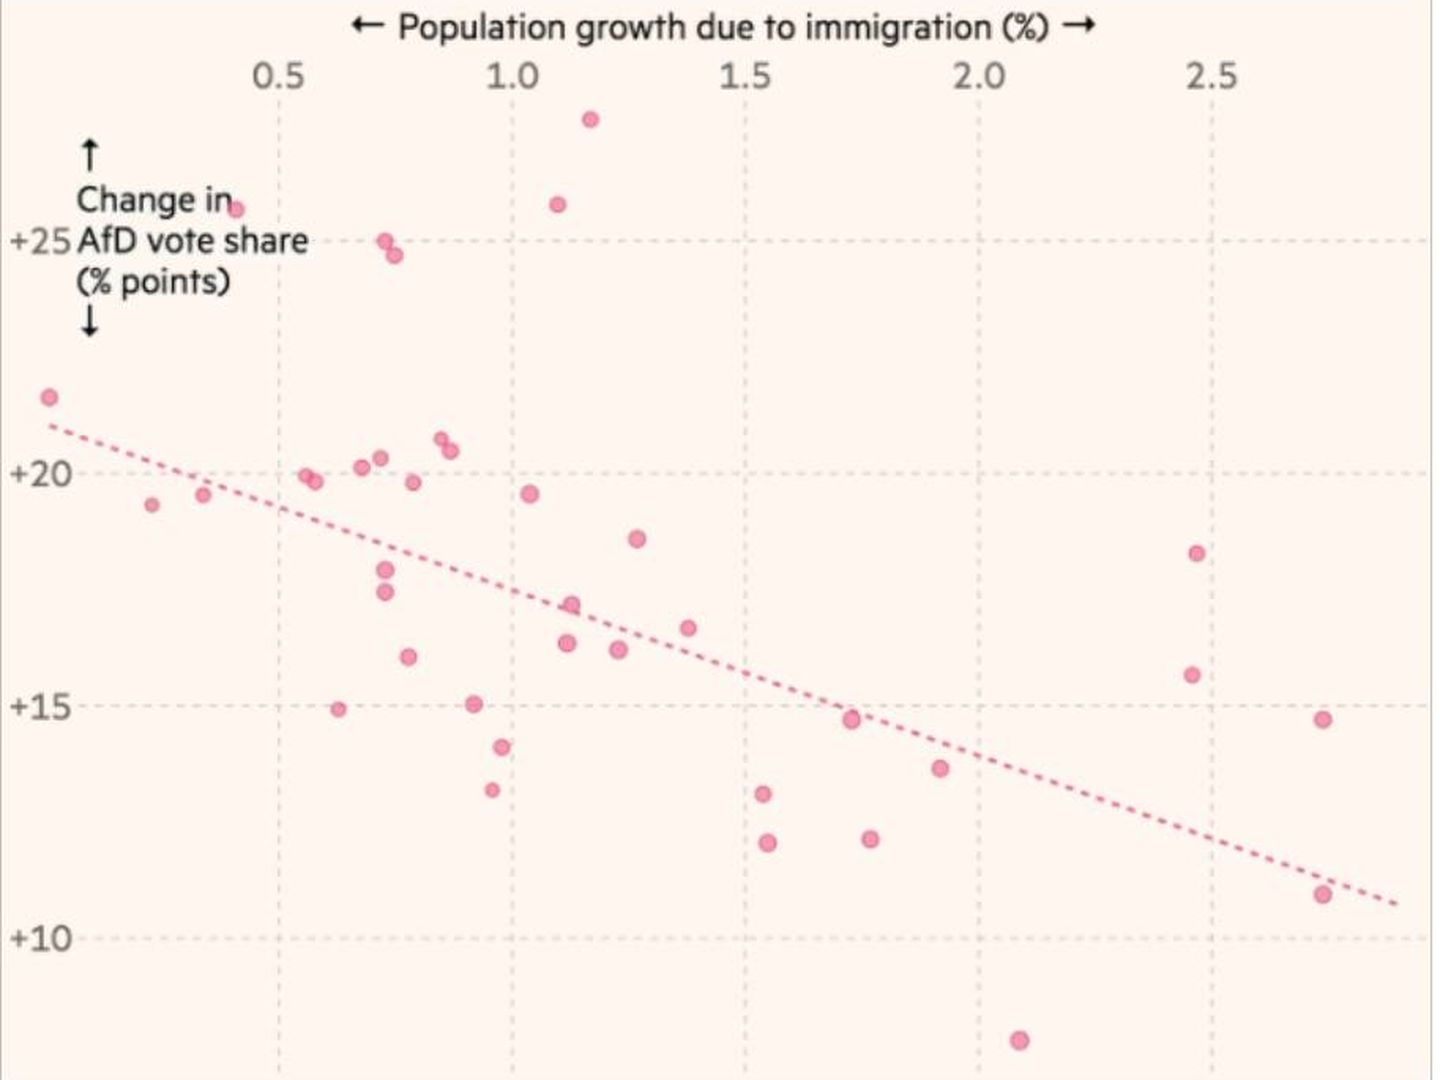 Relación entre el crecimiento de la inmigración y el aumento del voto a AfD. (Fuente: 'Financial Times')